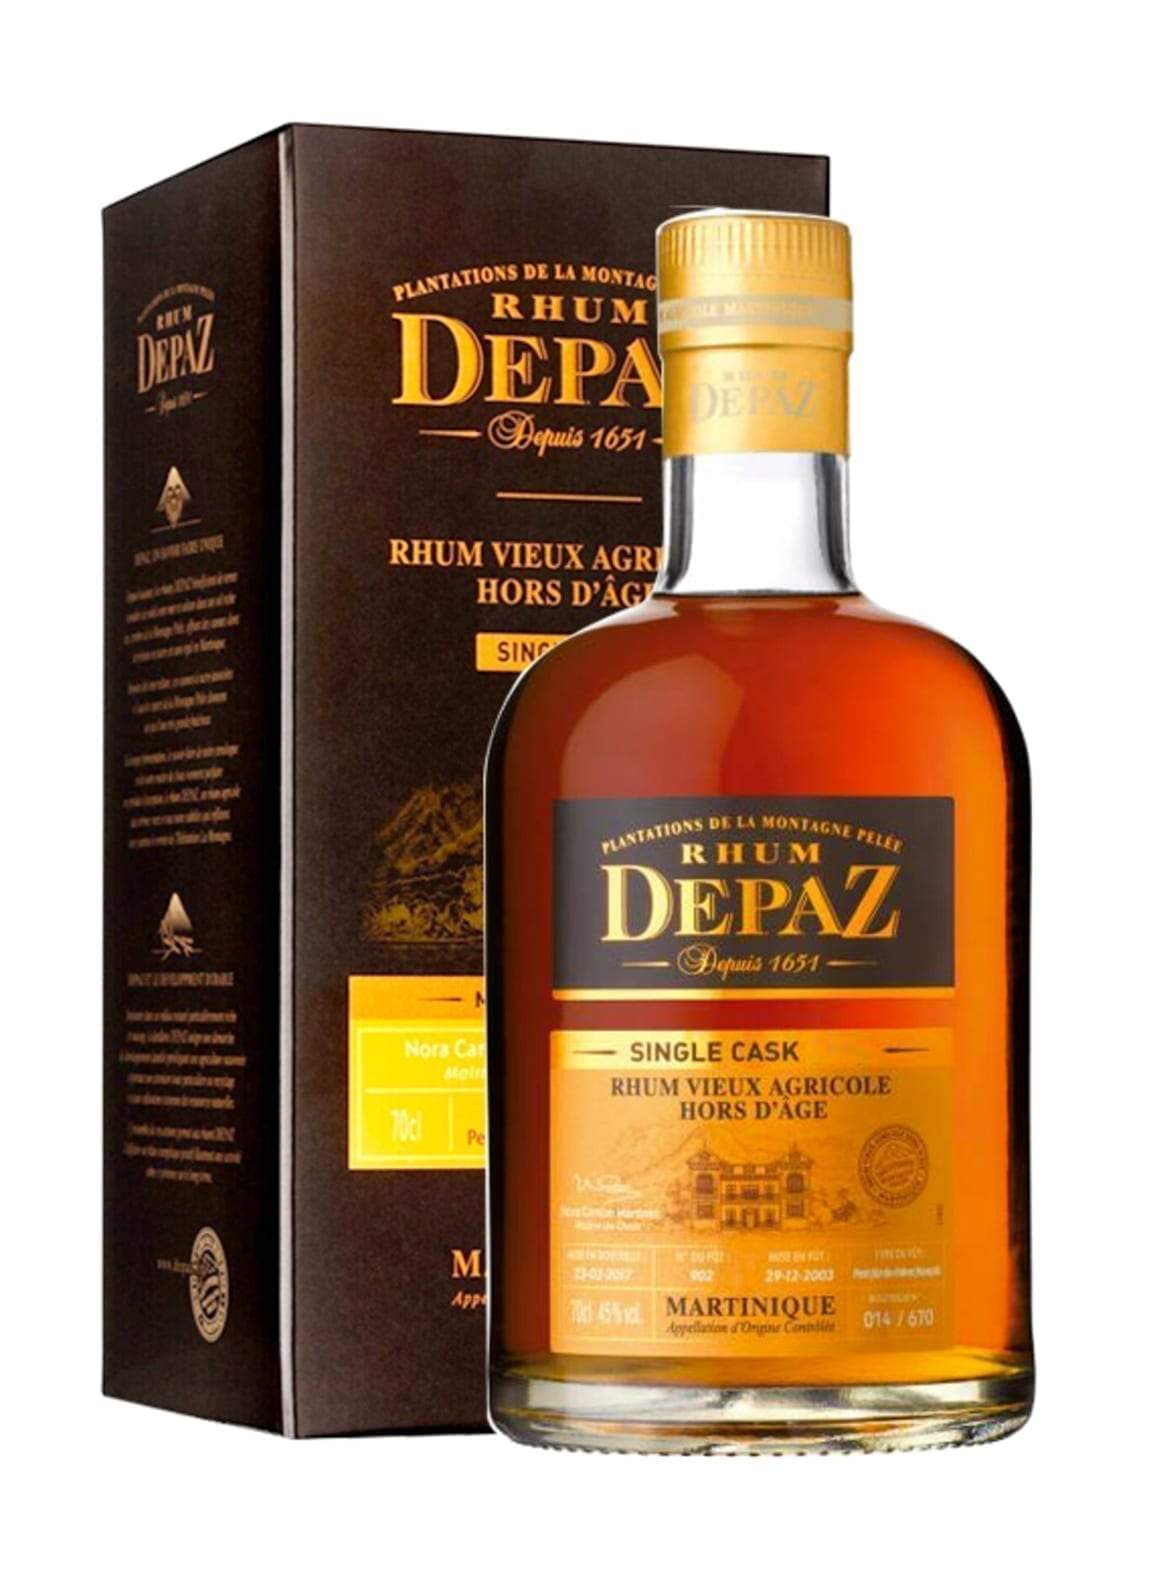 Depaz Rum Single Cask 2003 11 years 45% 700ml | Rum | Shop online at Spirits of France